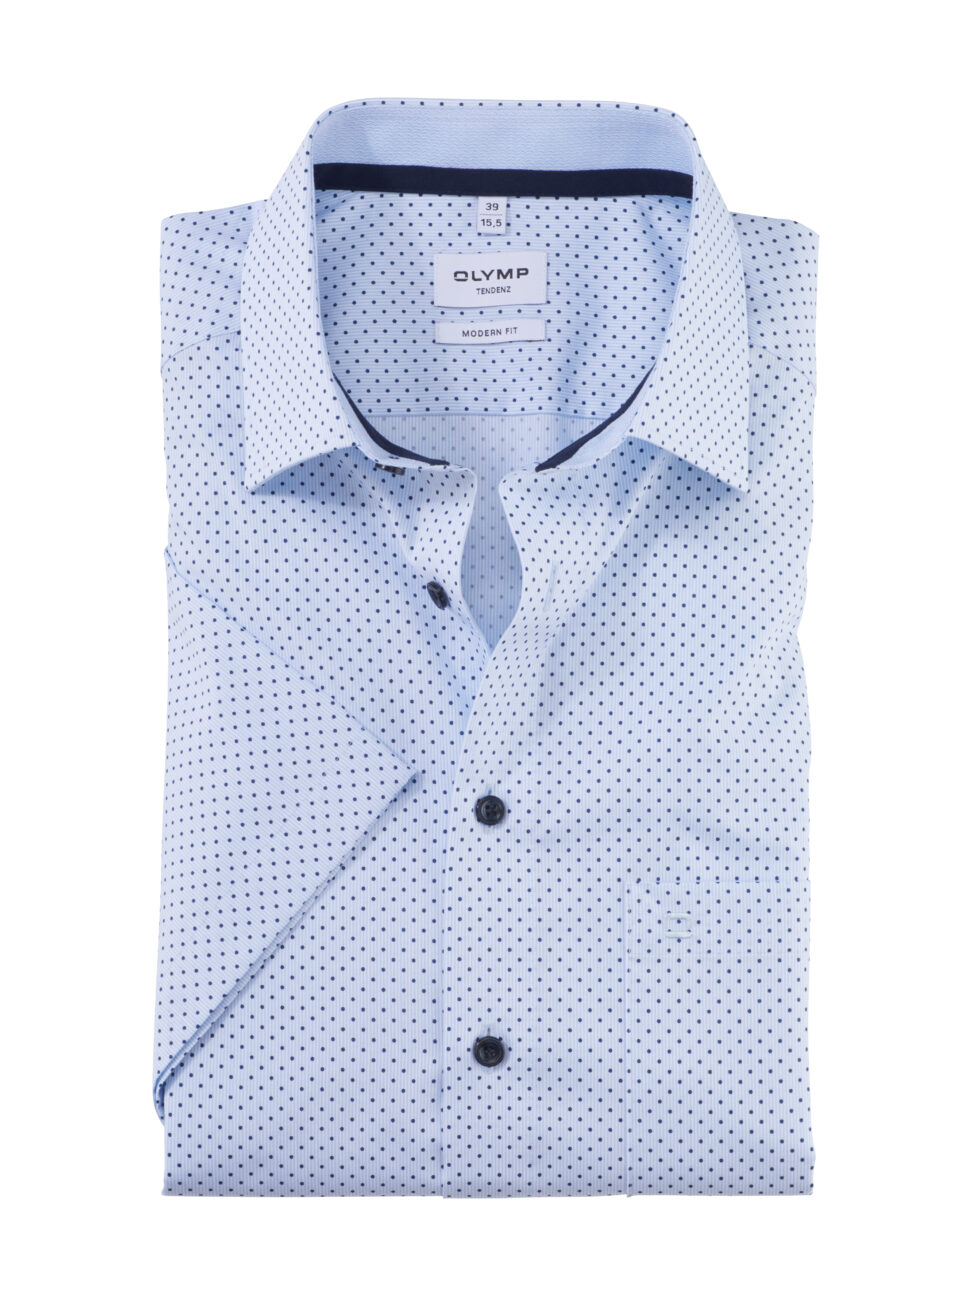 Koszula OLYMP Tendenz, modern fit, Błękitna w kropeczki / New Kent / 86383211 krótki rękaw